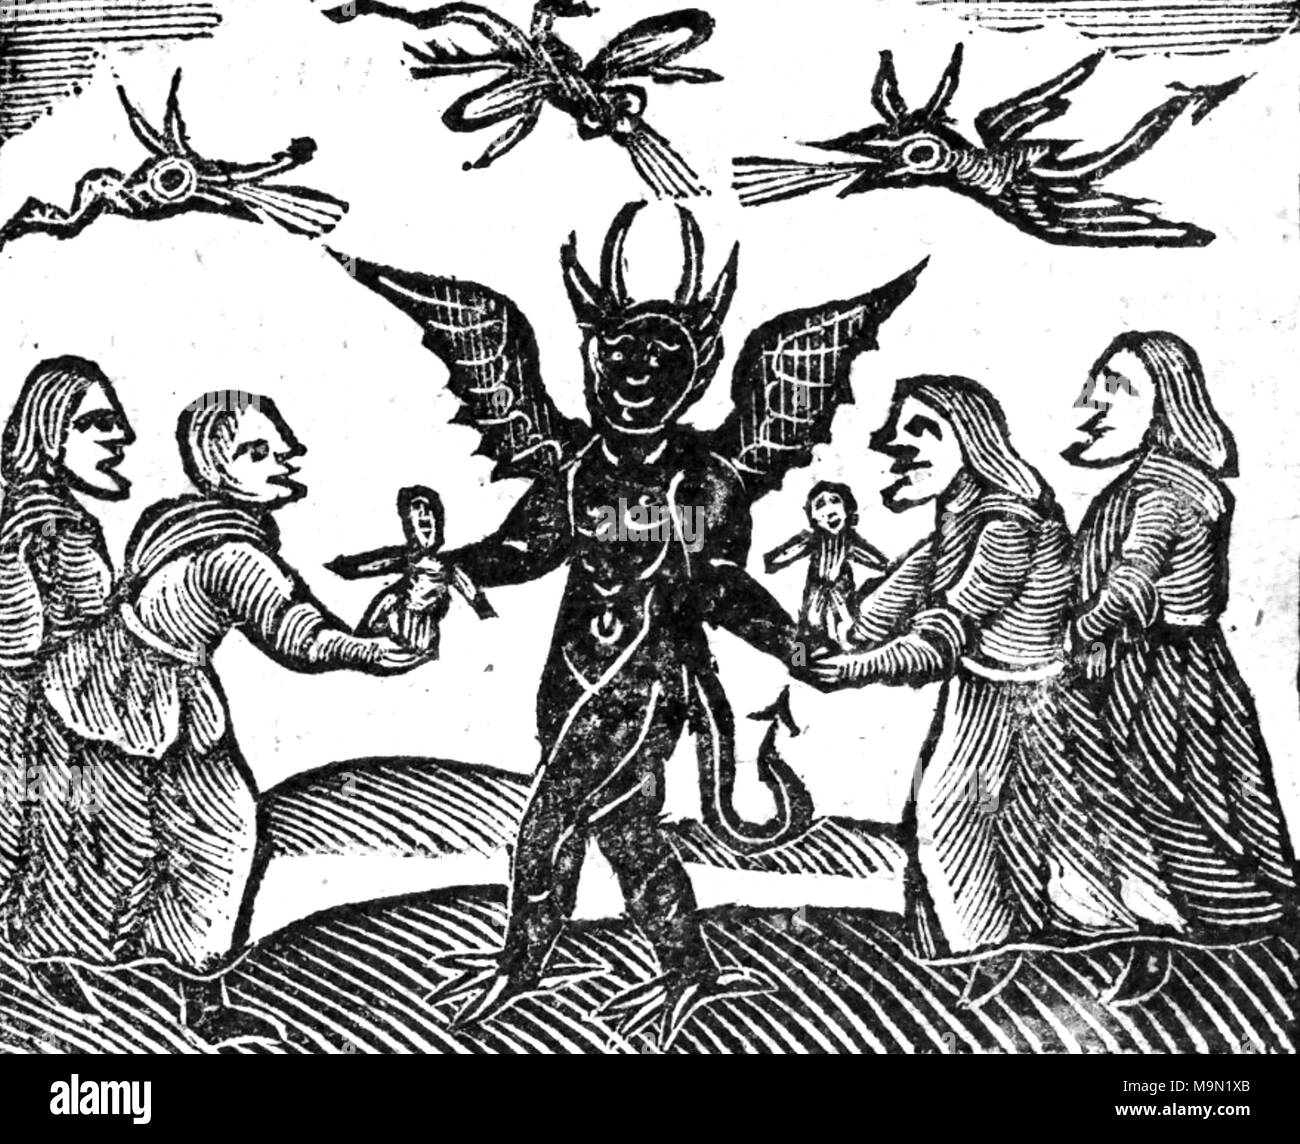 Un groupe de sorcières sorcellerie offrant des effigies de cire pour le diable dans une gravure sur bois du 17ème siècle Banque D'Images